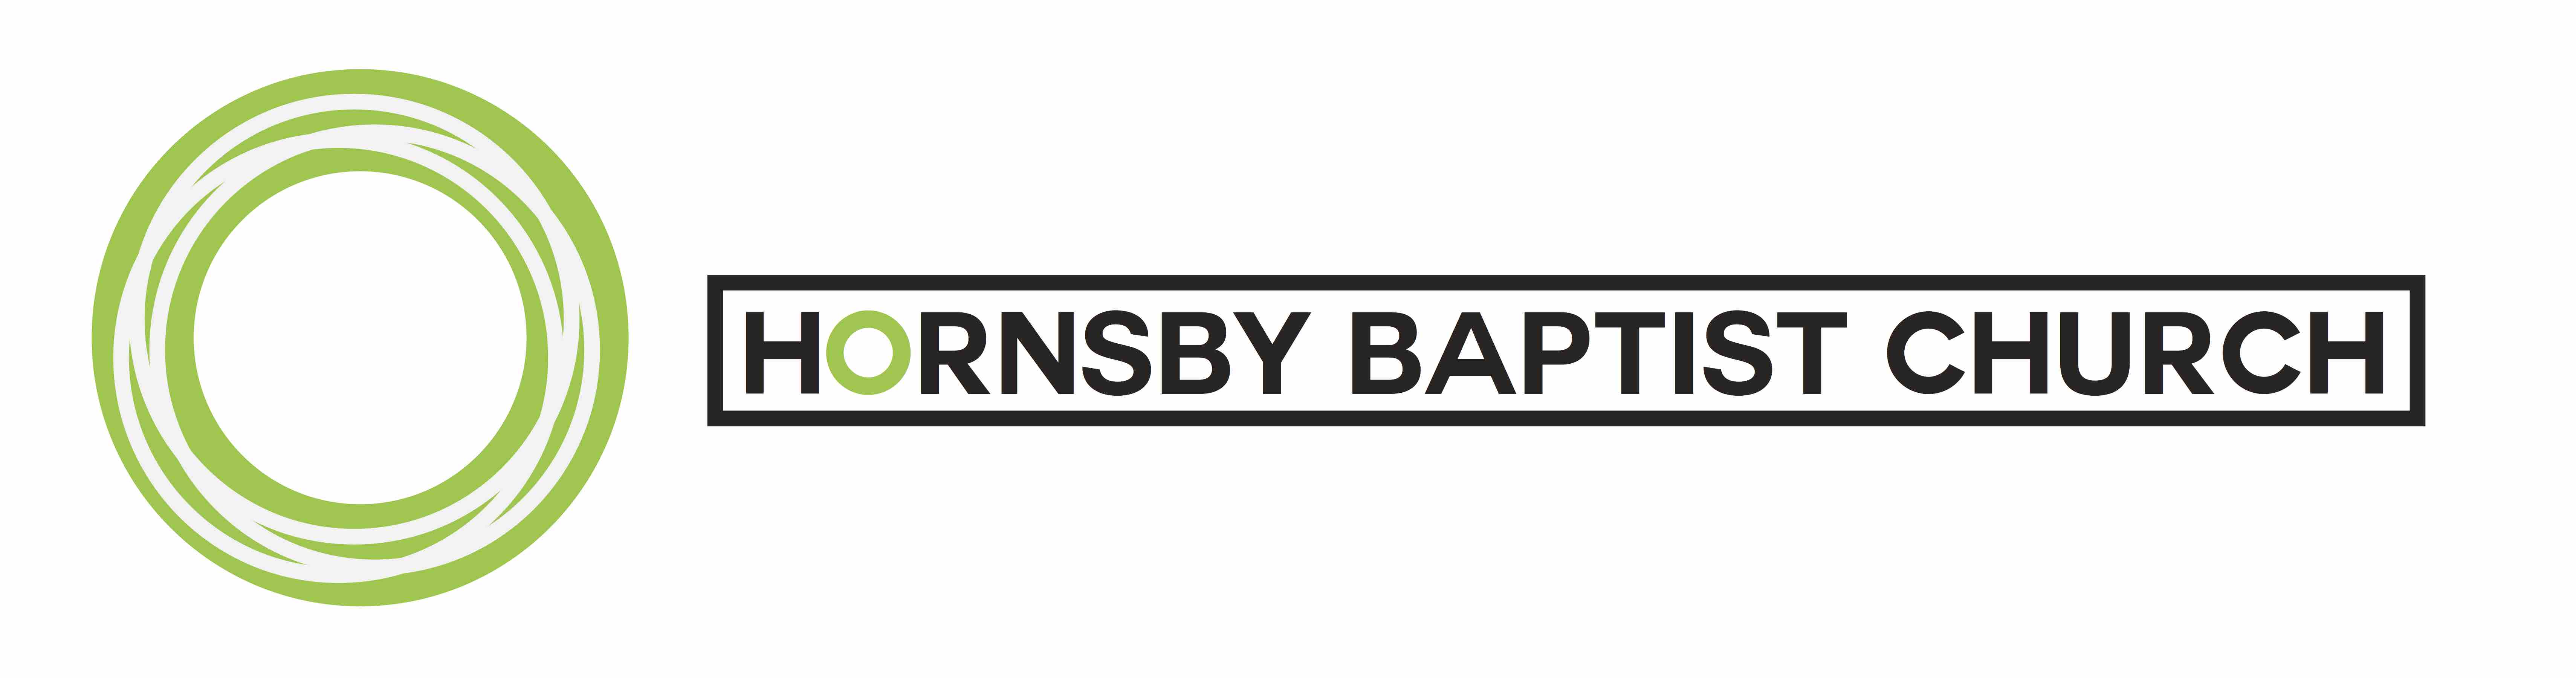 Hornsby Baptist Church logo